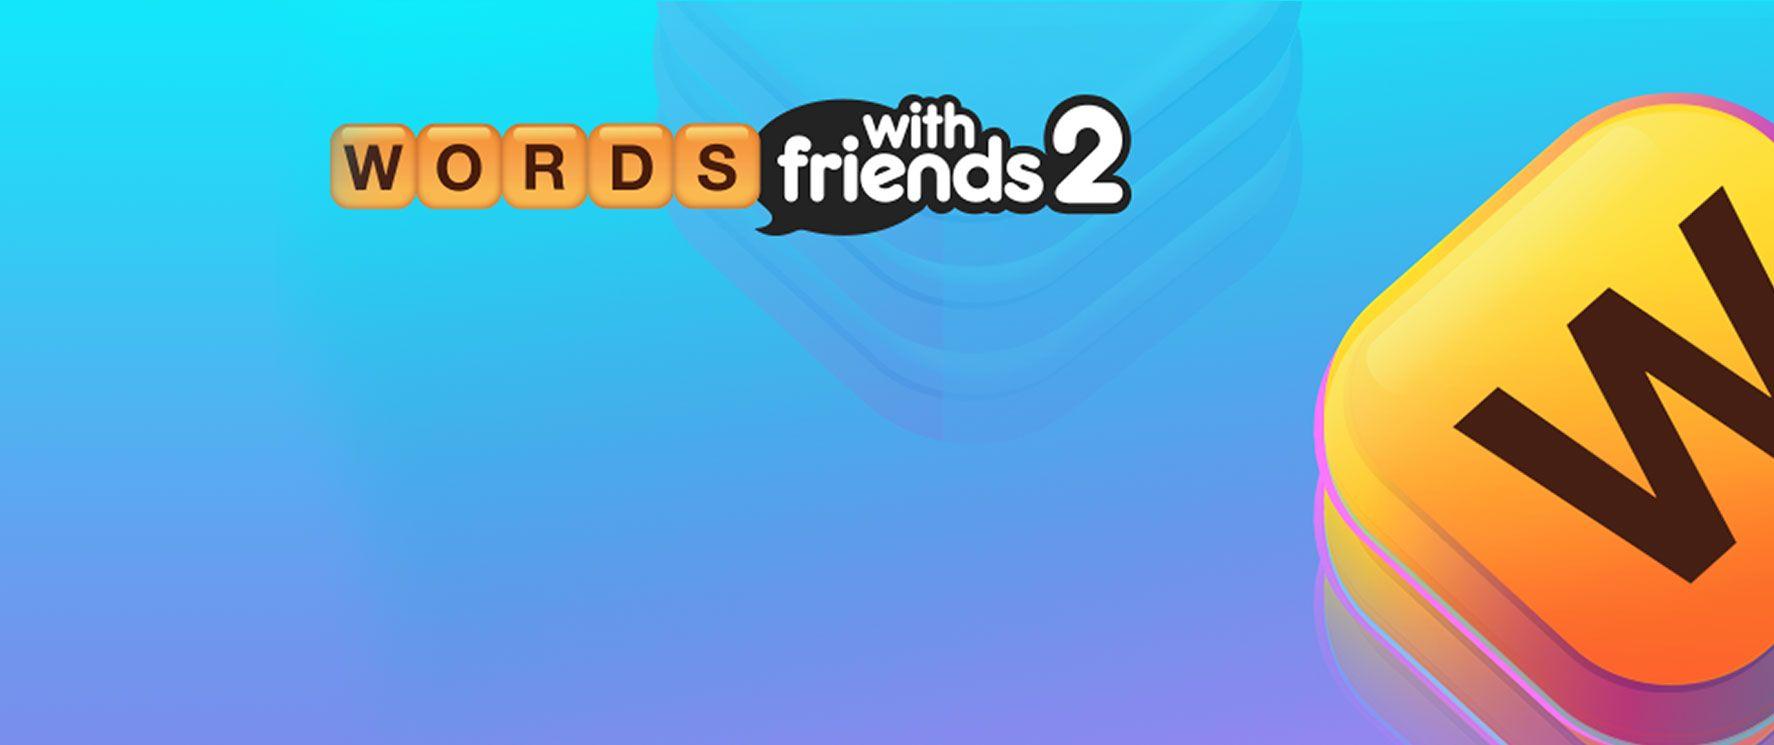 2 Black Word Logo - Words with Friends 2 - Zynga - Zynga